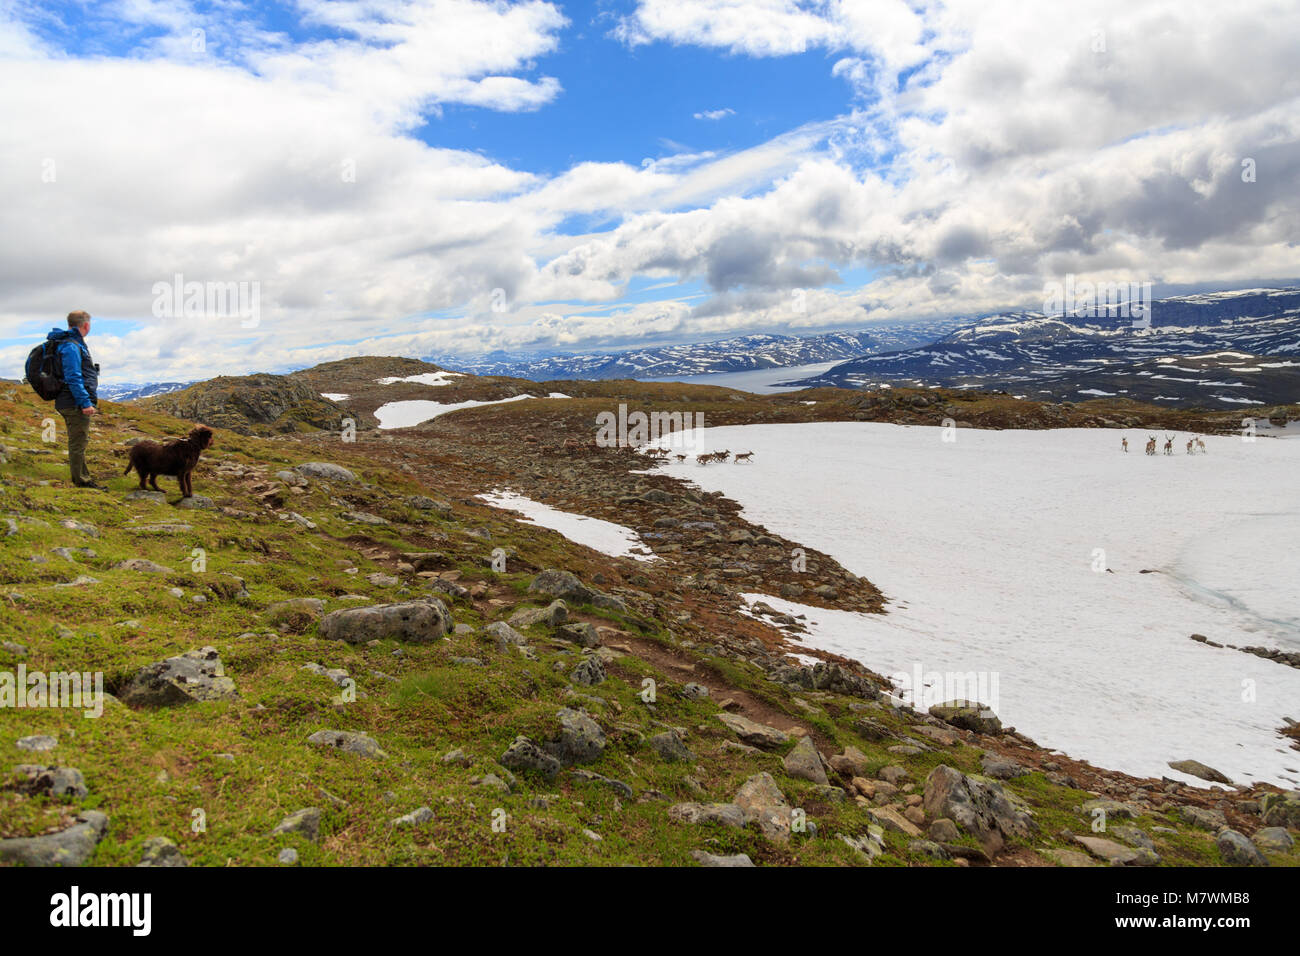 L'homme et le chien de regarder un troupeau de rennes en travers de la montagne en Norvège Jotunheimen Banque D'Images